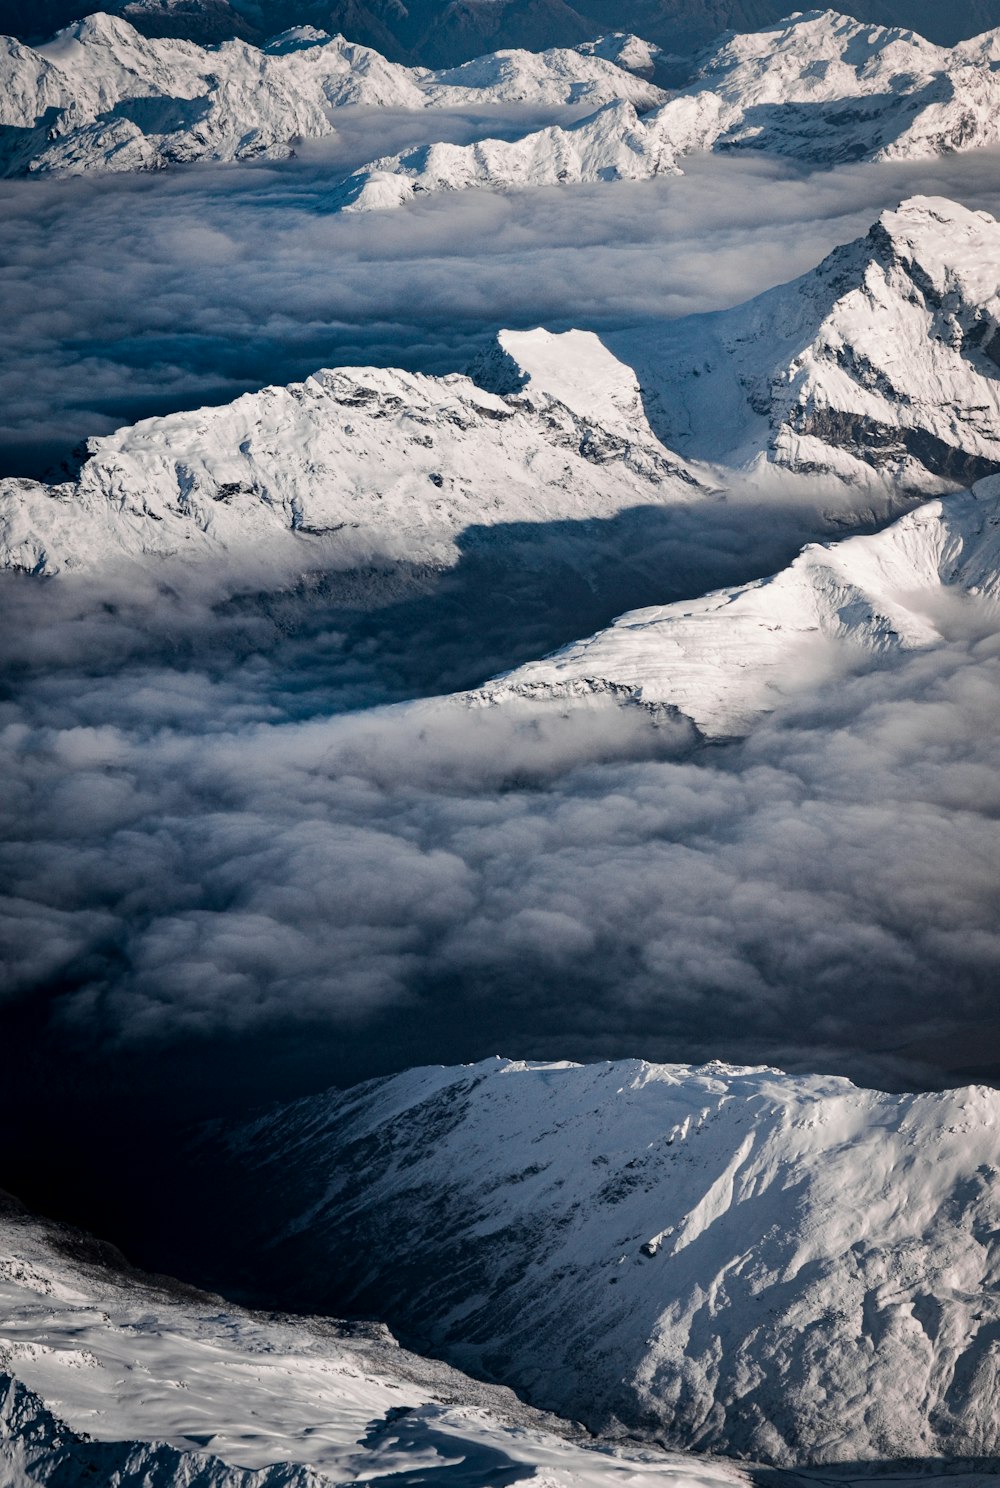 montagna coperta di neve sotto nuvole bianche durante il giorno